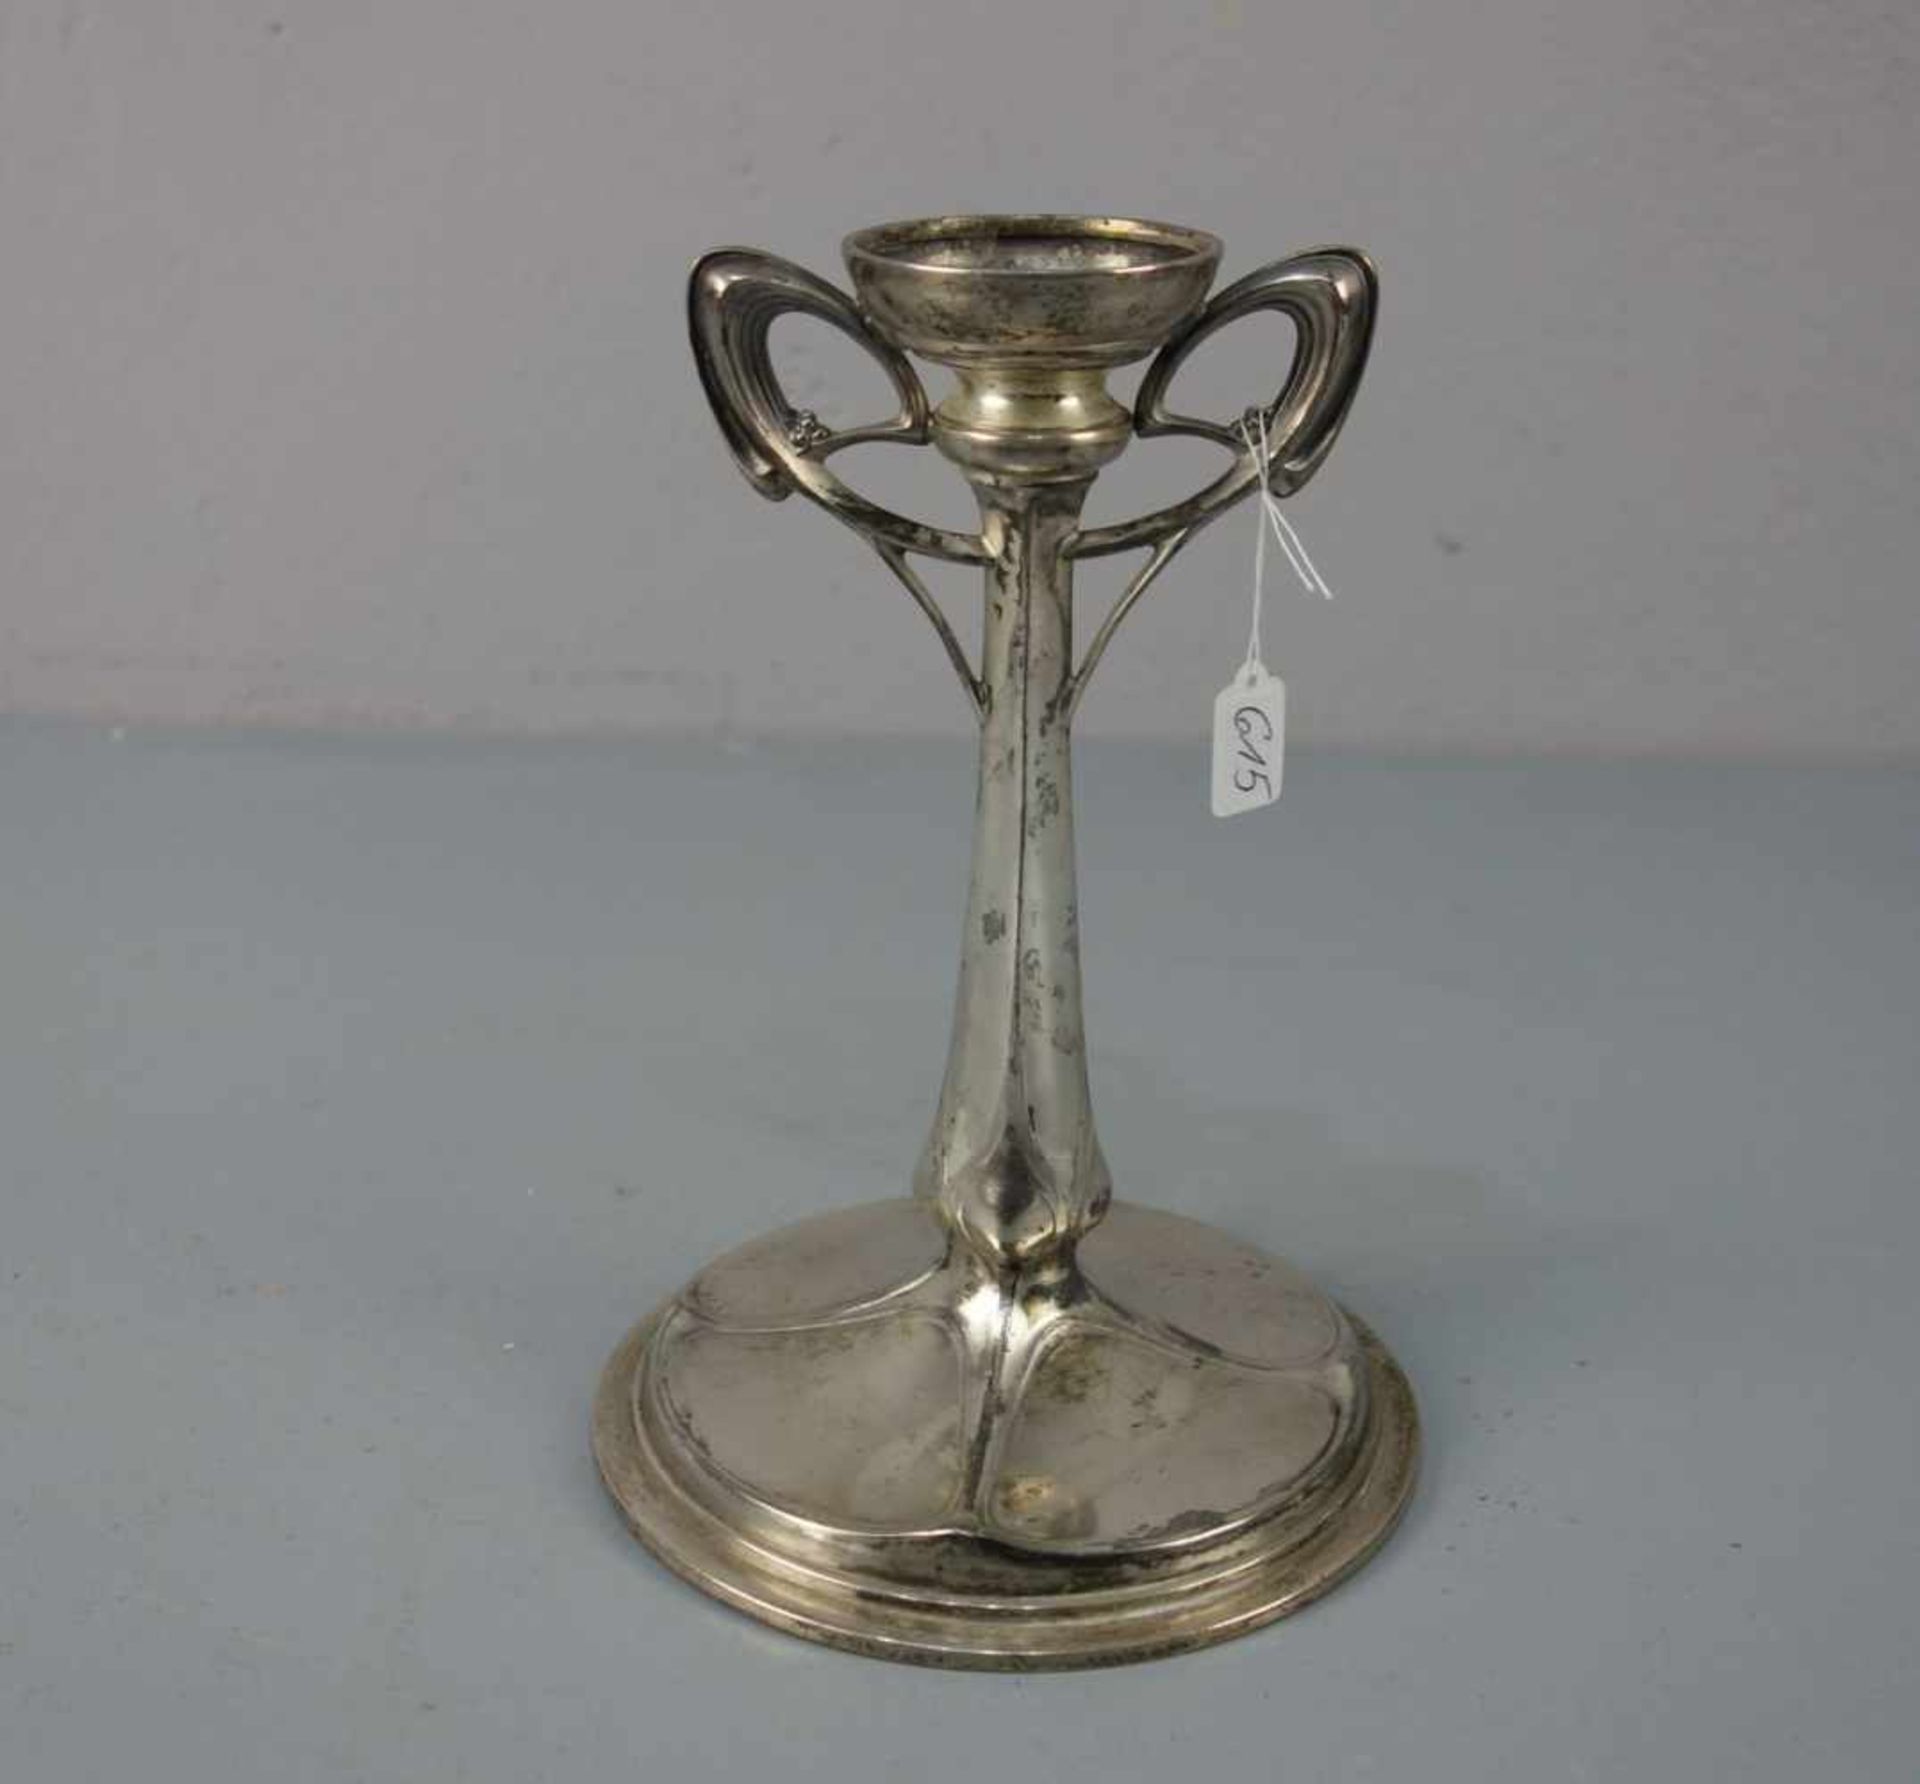 JUGENDSTIL - LEUCHTER / TISCHLEUCHTER / art nouveau candle stand, versilbertes Metall, um 1900.